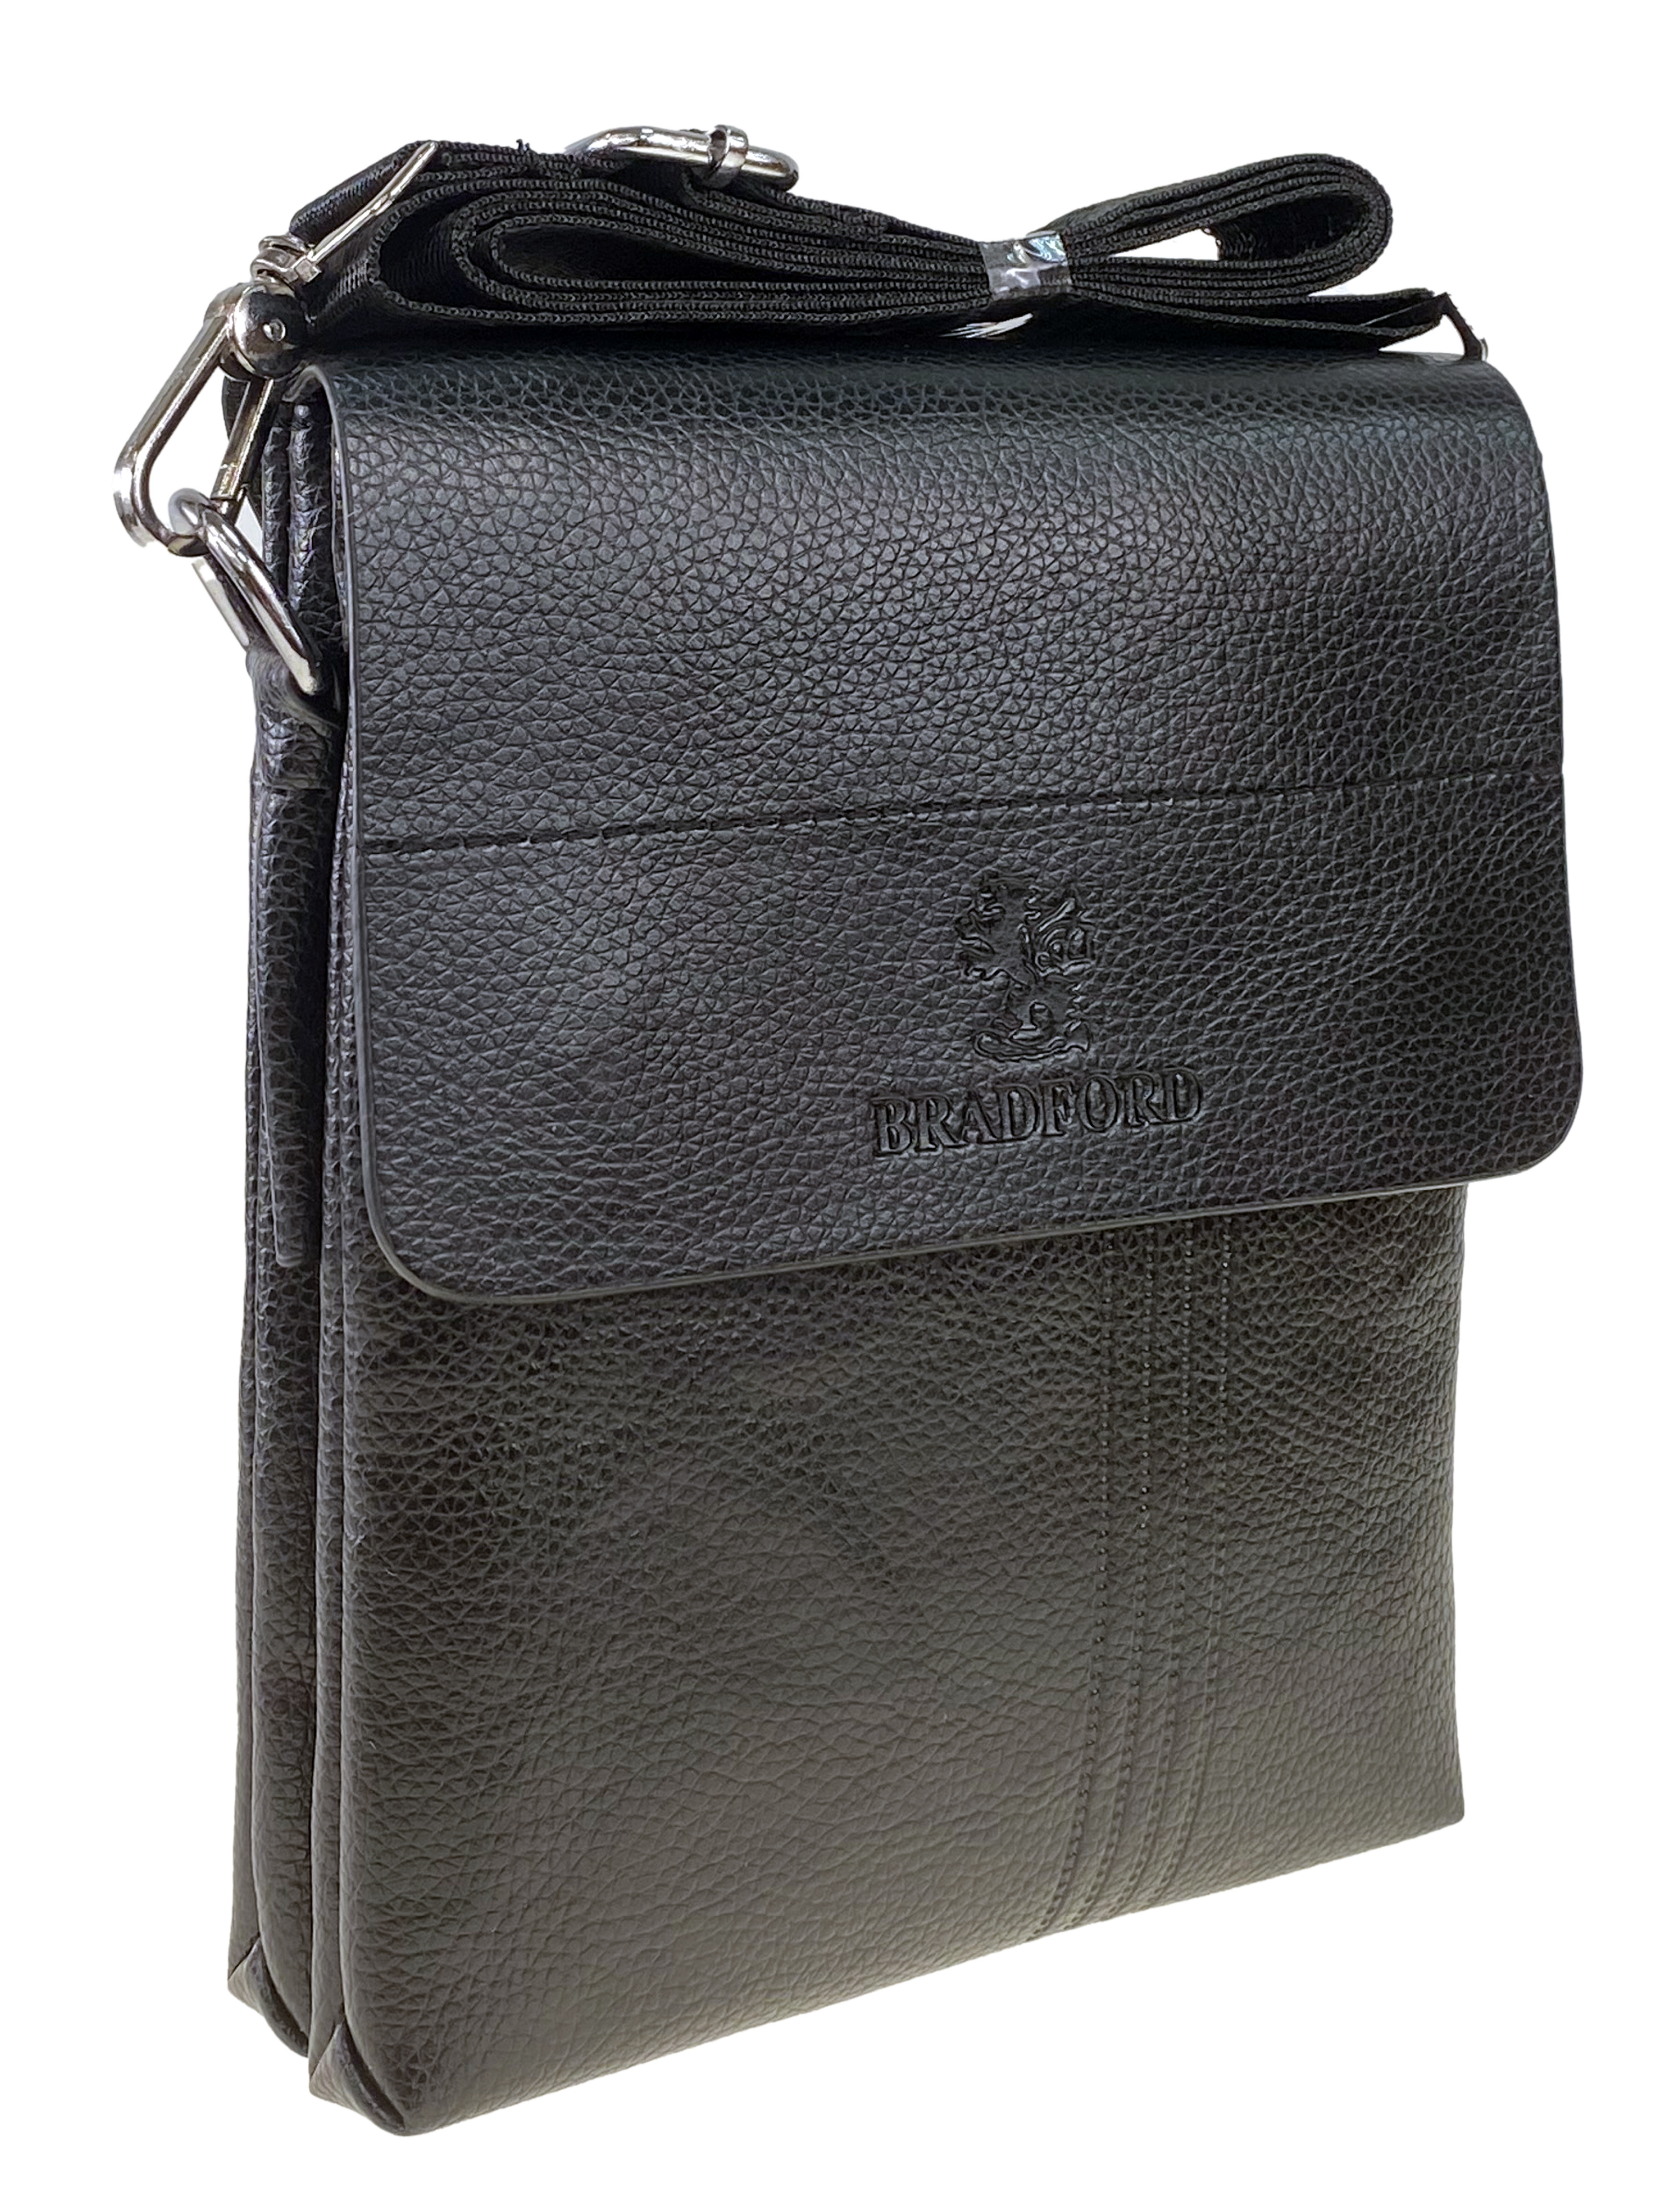 Мужская сумка планшет из фактурной экокожи, цвет чёрный